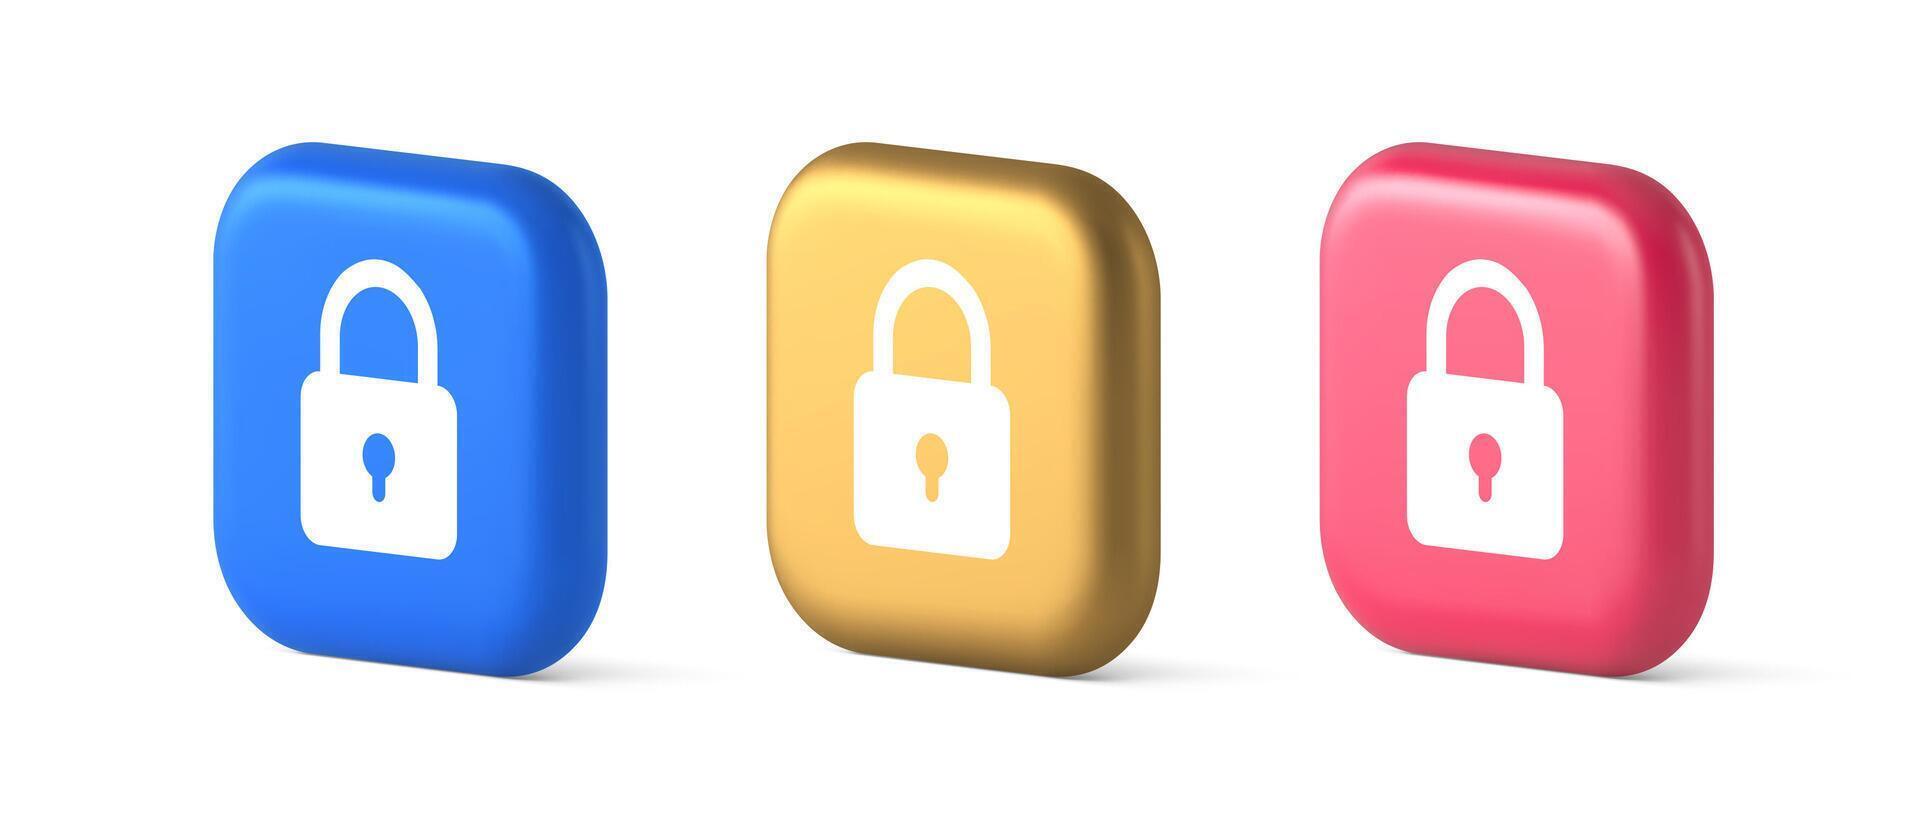 lucchetto bloccaggio ragnatela accesso pulsante parola d'ordine sicurezza protezione sicuro crittografia 3d icona vettore